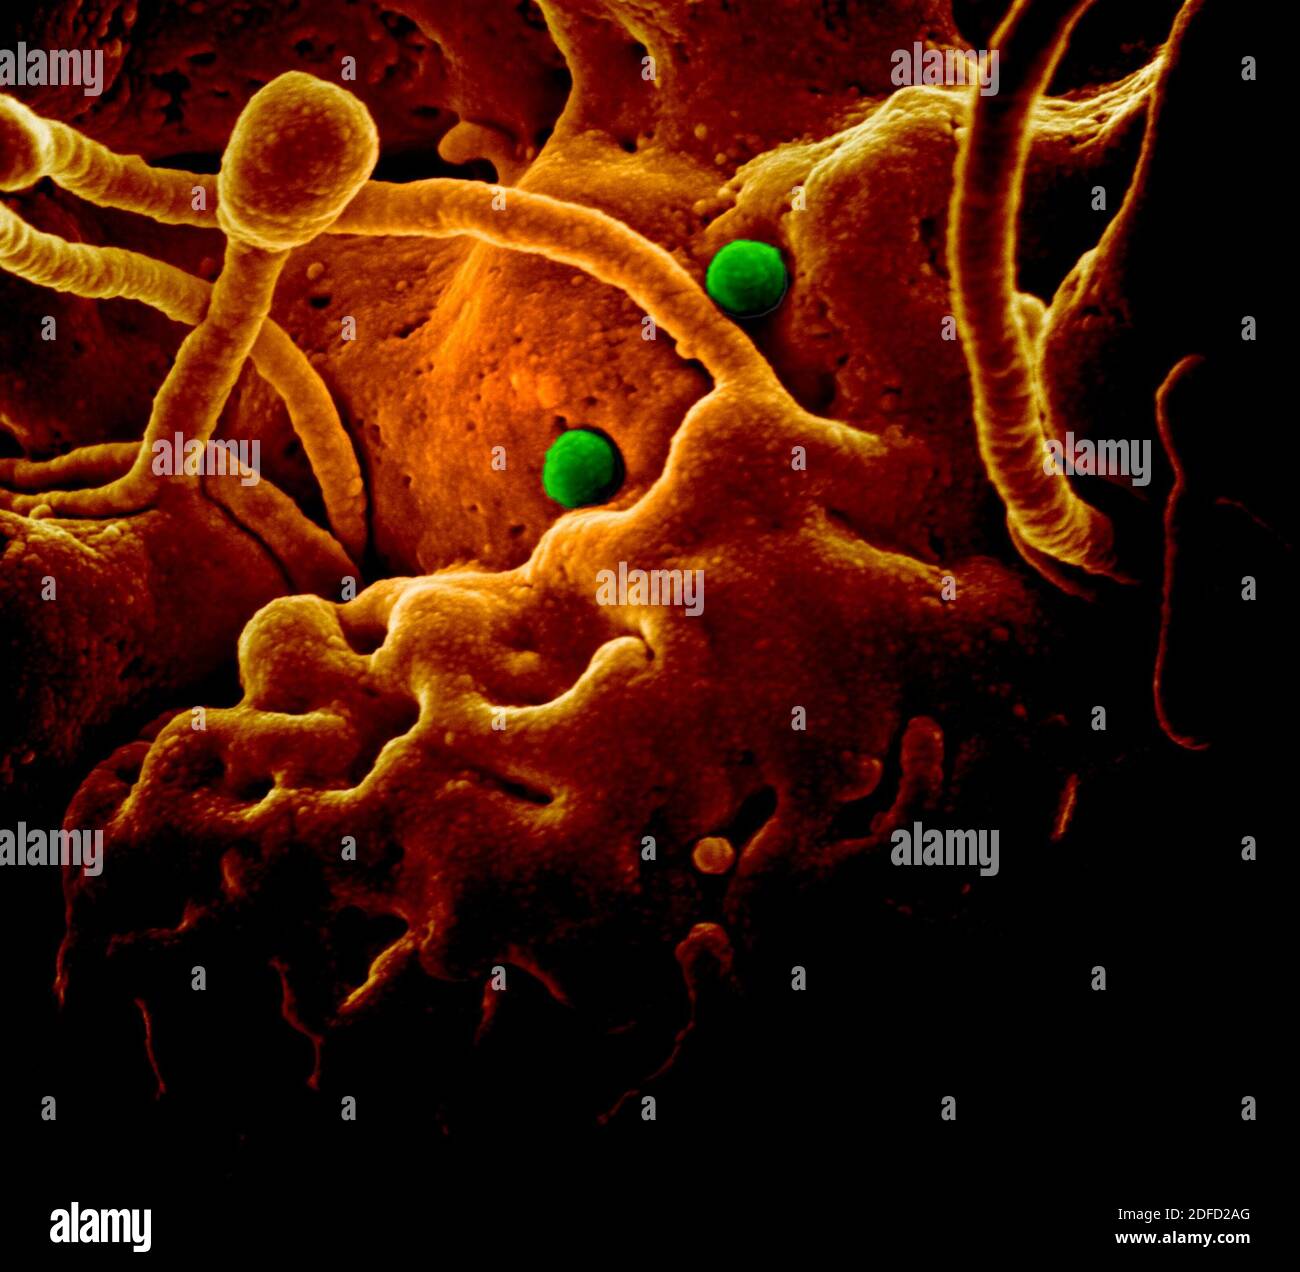 Mers coronavirus particles Stock Photo